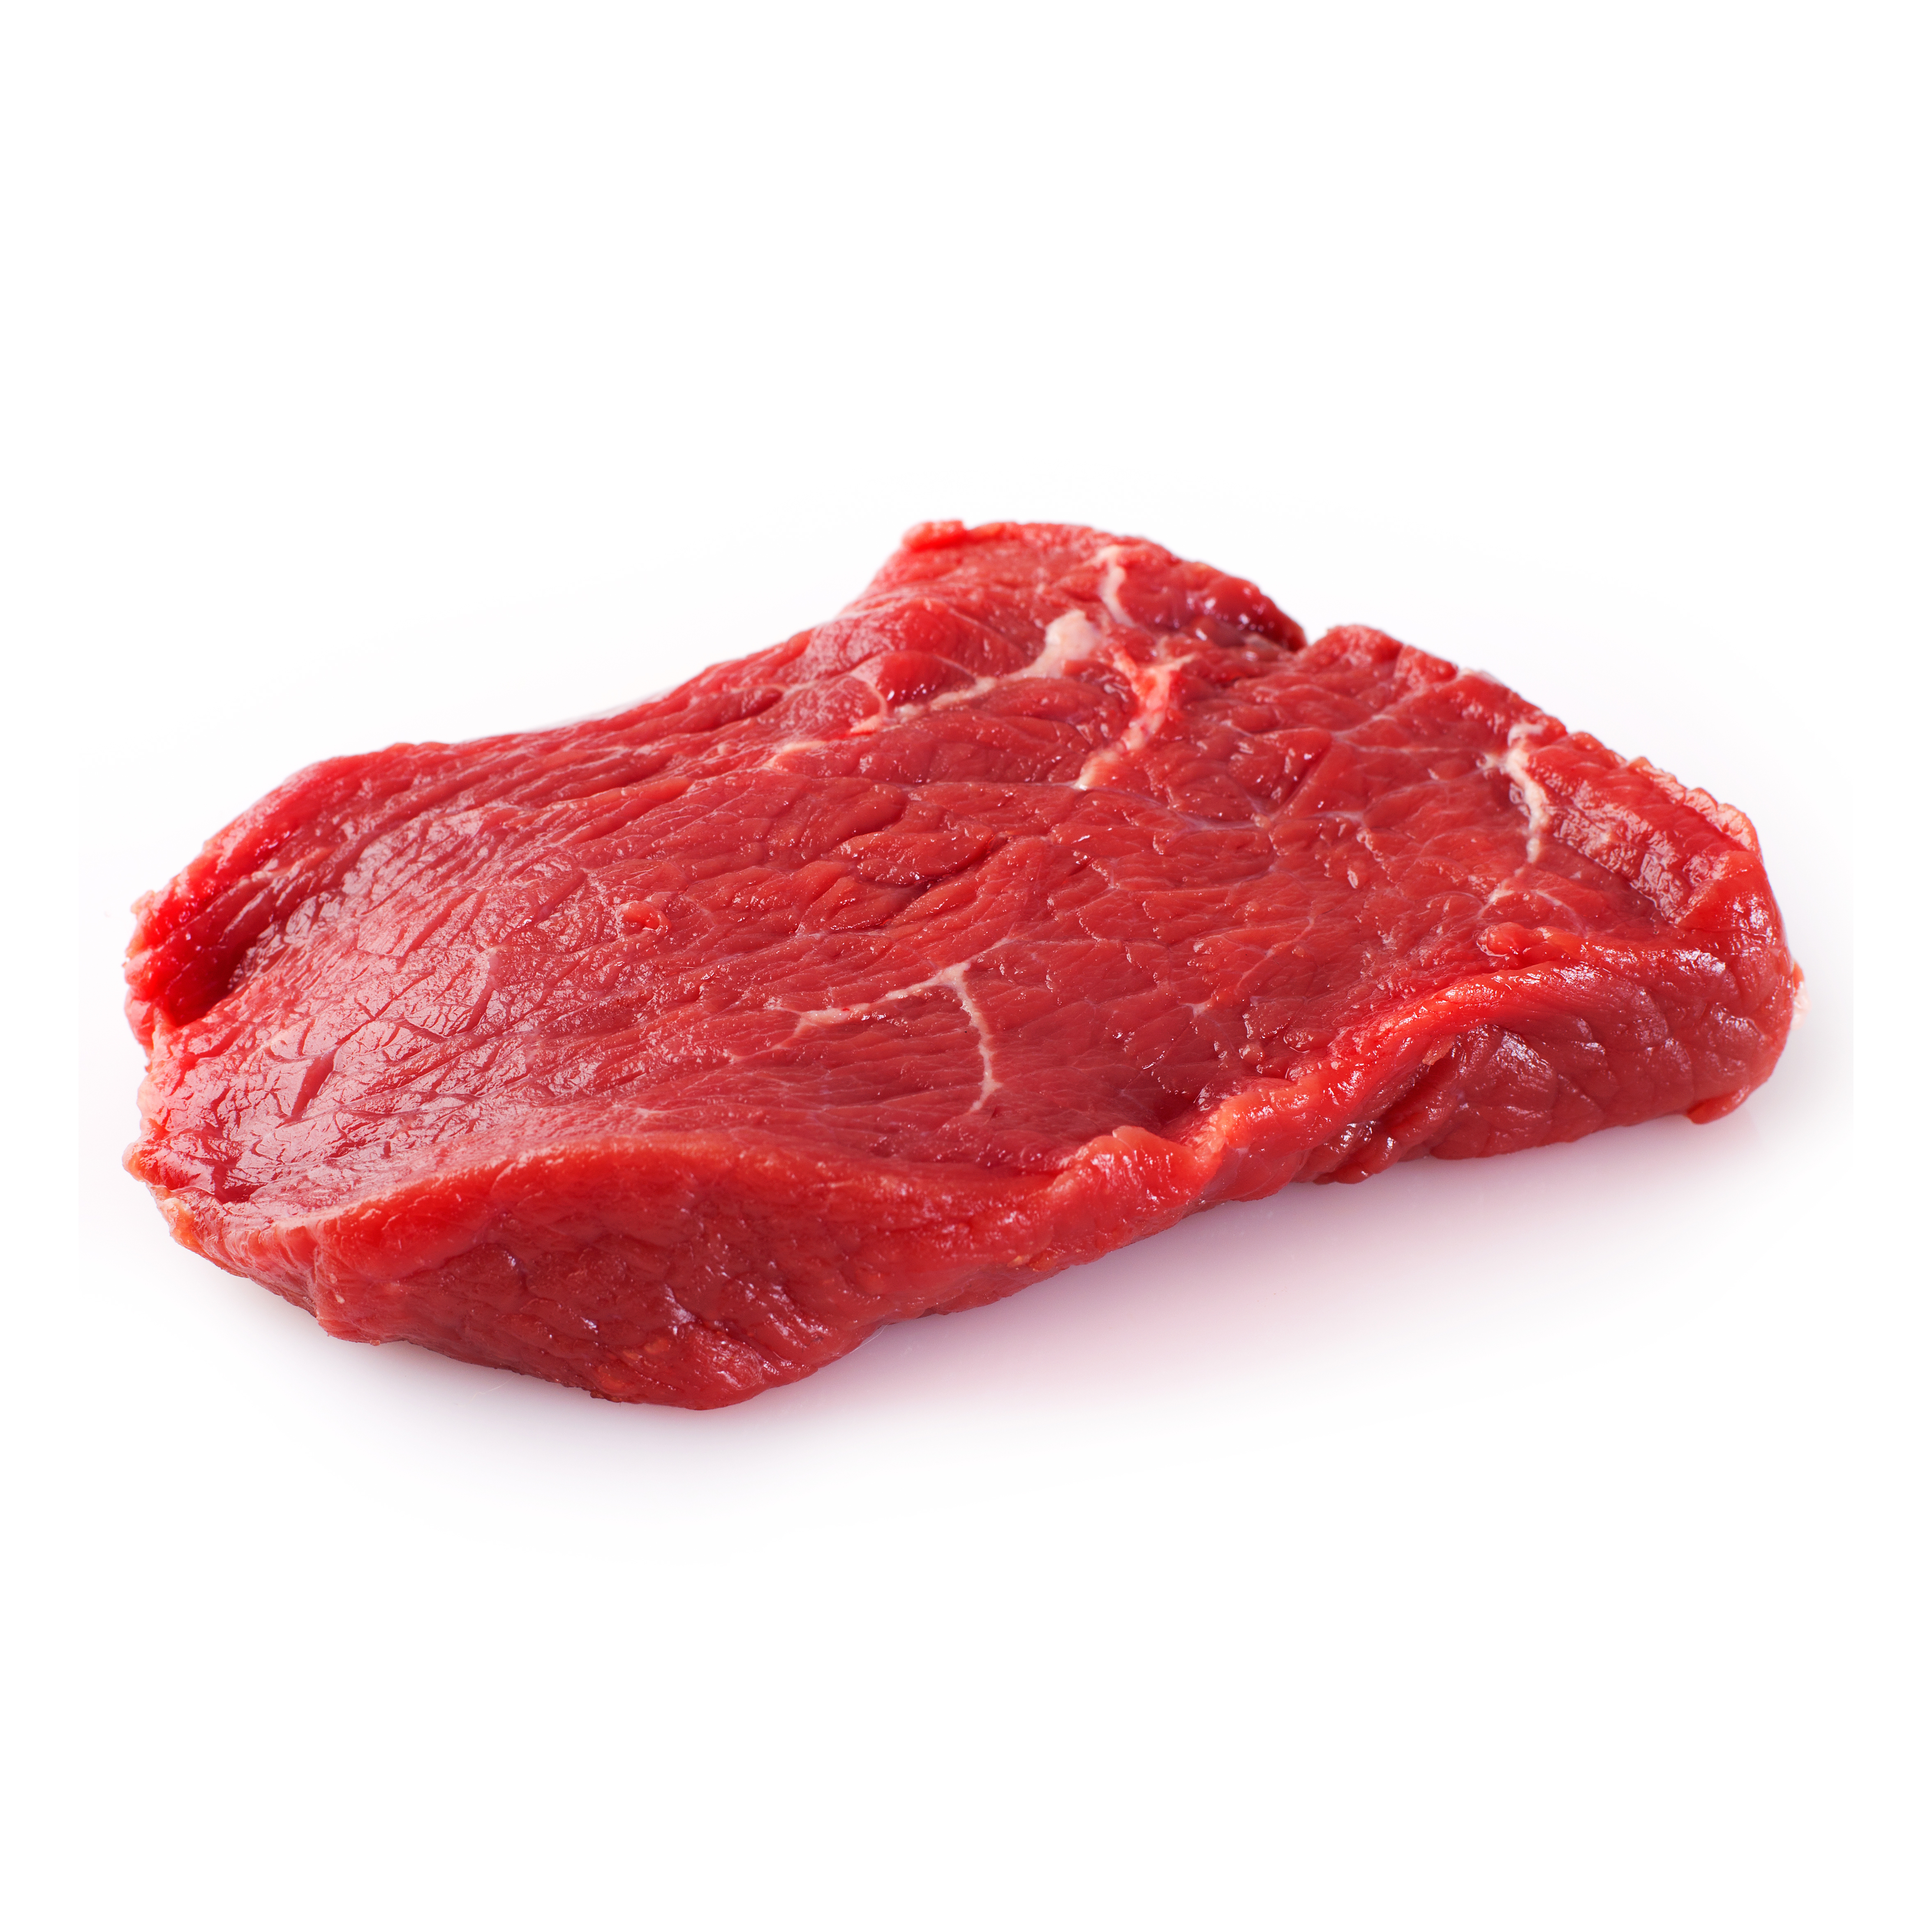 Recettes Steak au poivre